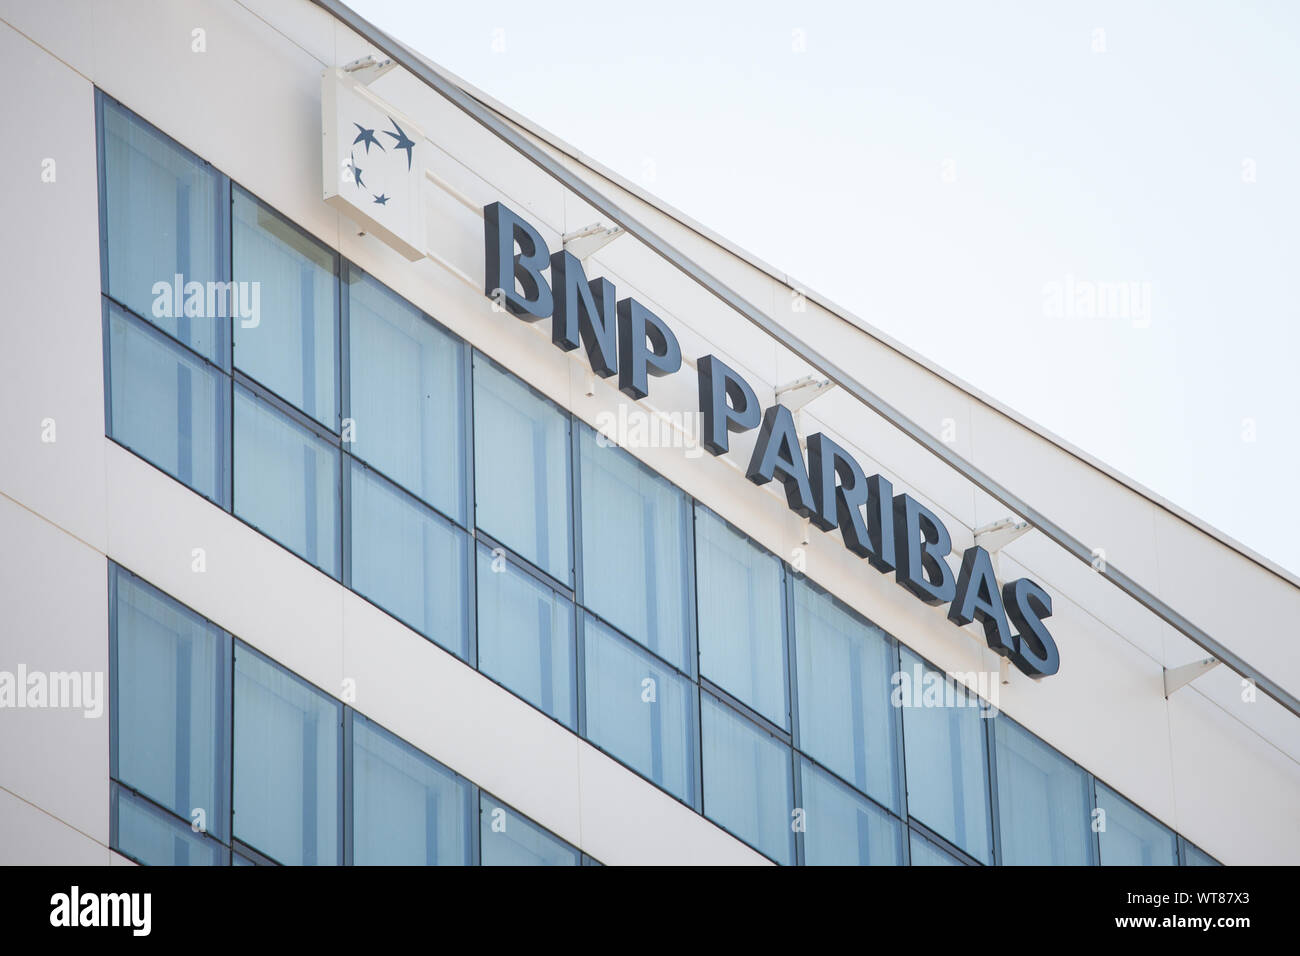 LYON, FRANCIA - Julio 13, 2019: BNP Paribas logotipo en su oficina principal de Lyon. BNP Paribas es un banco francés, uno de los más grandes en Francia y en Europa Foto de stock